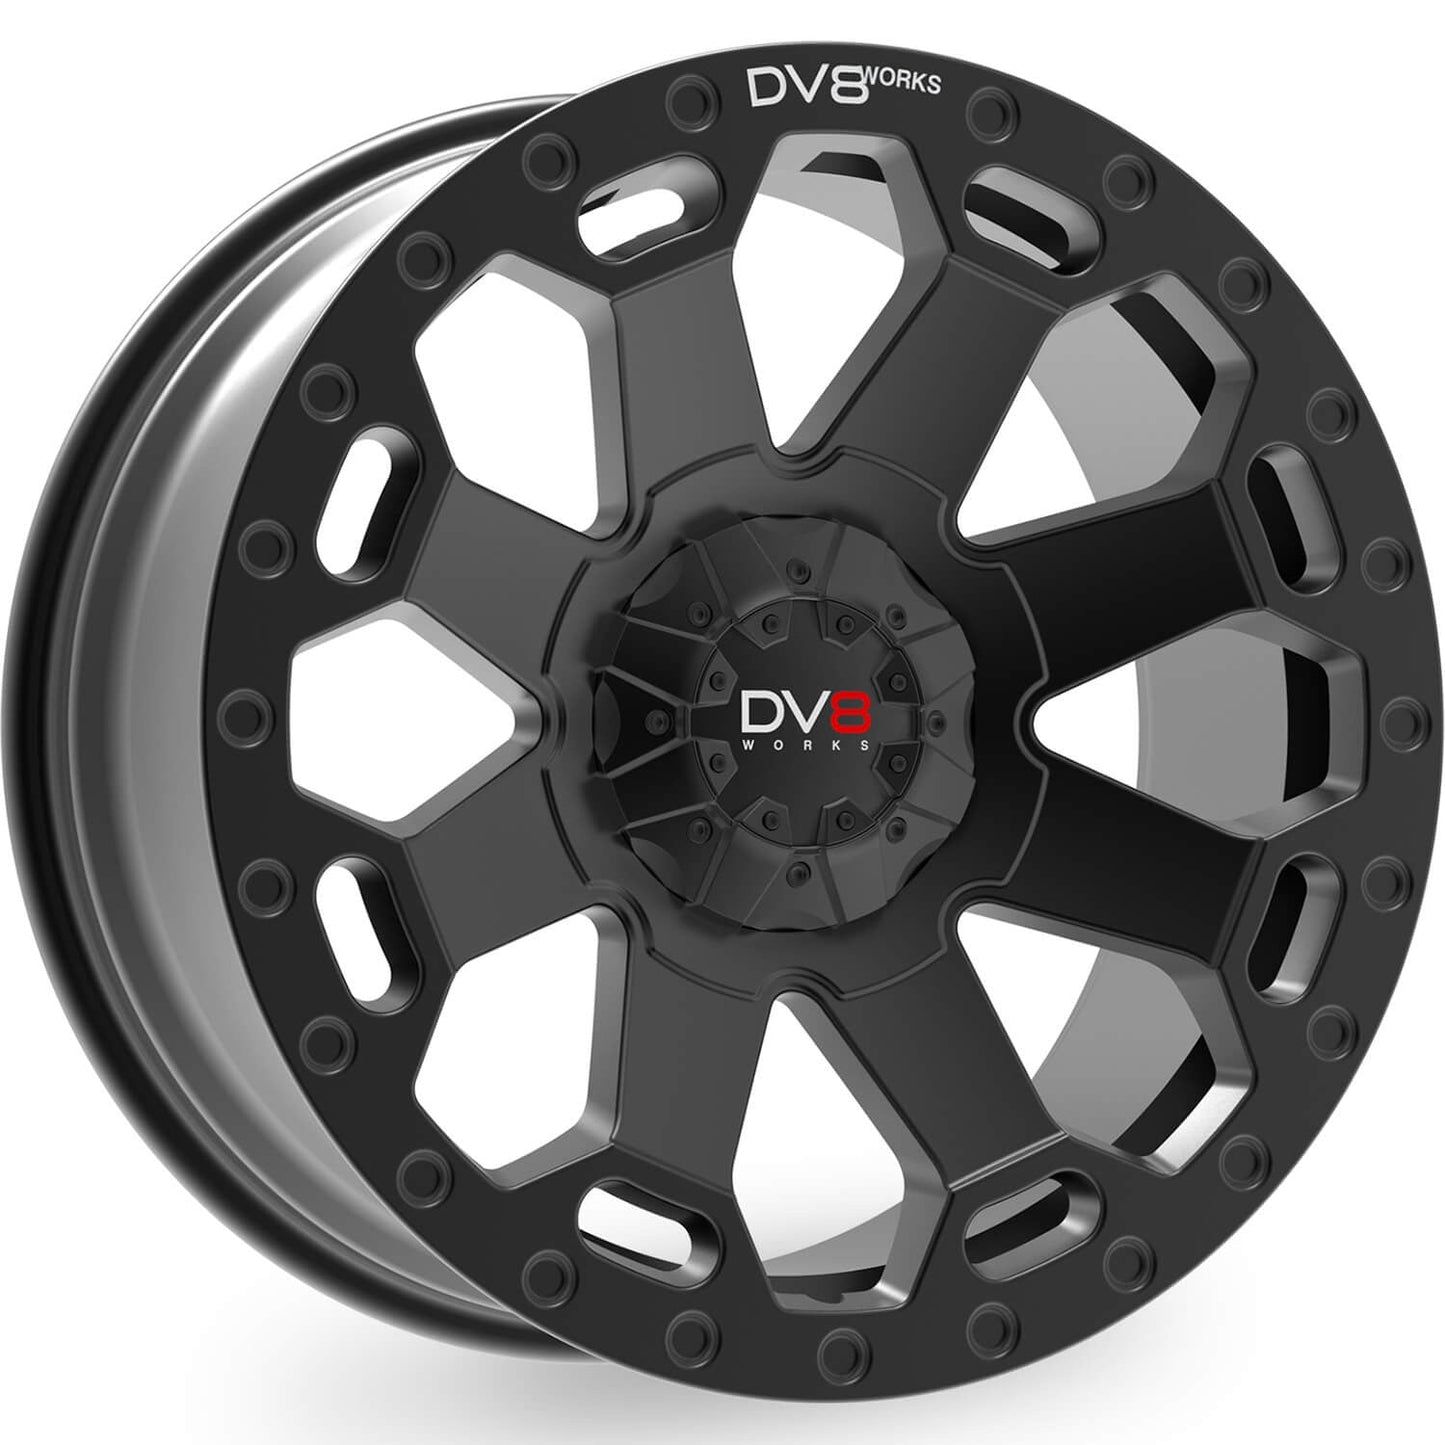 DV8 Works Concept Black 20" Alloy Wheel - Next-Gen Ranger UK